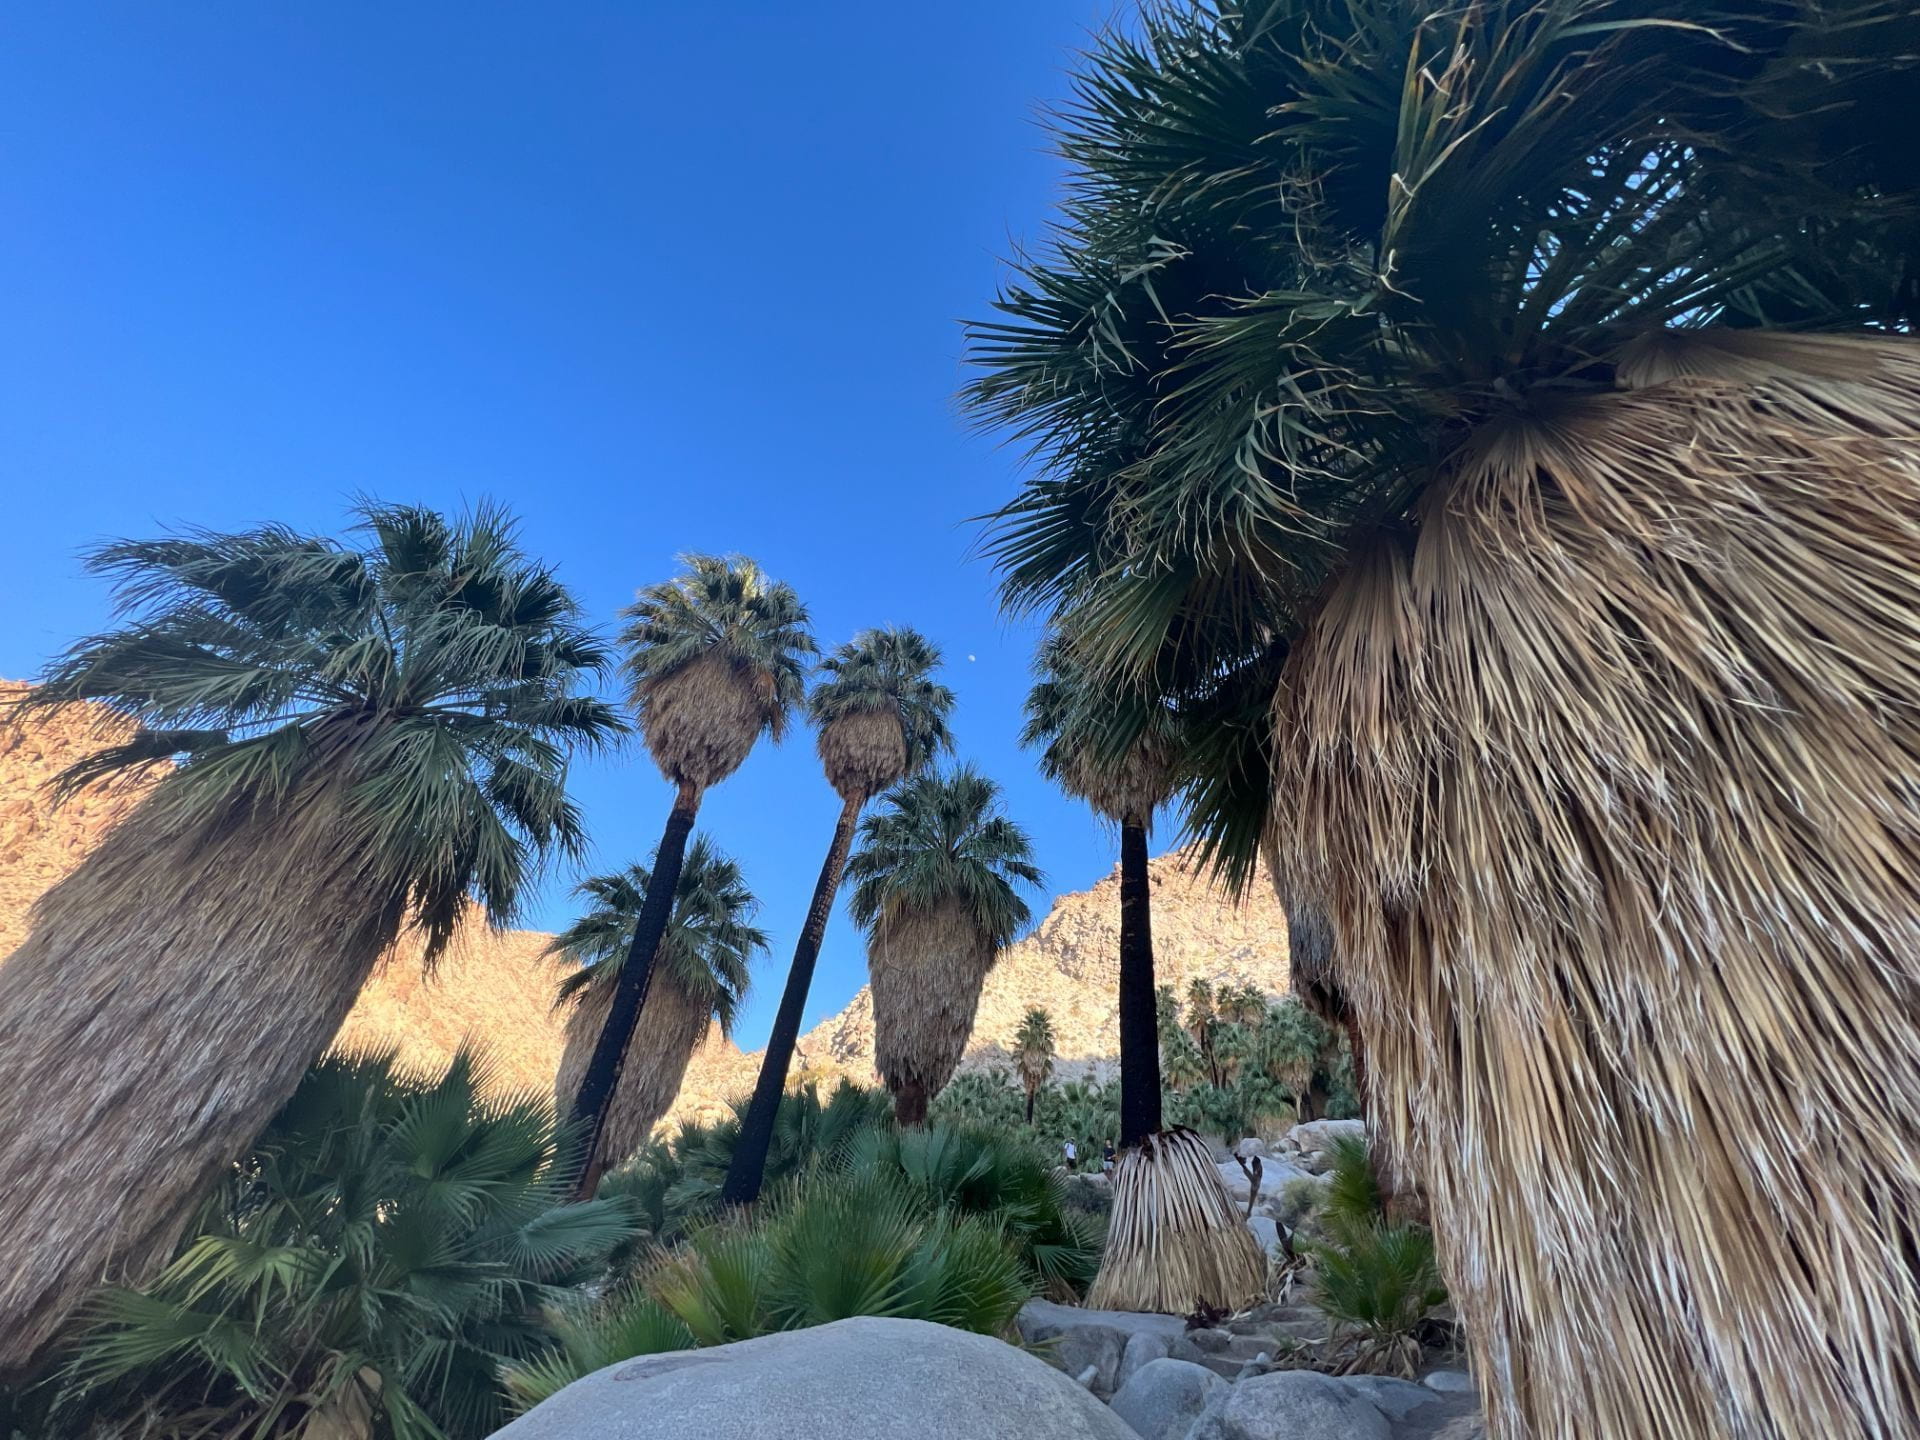 desert oasis with fan palms in Joshua Tree